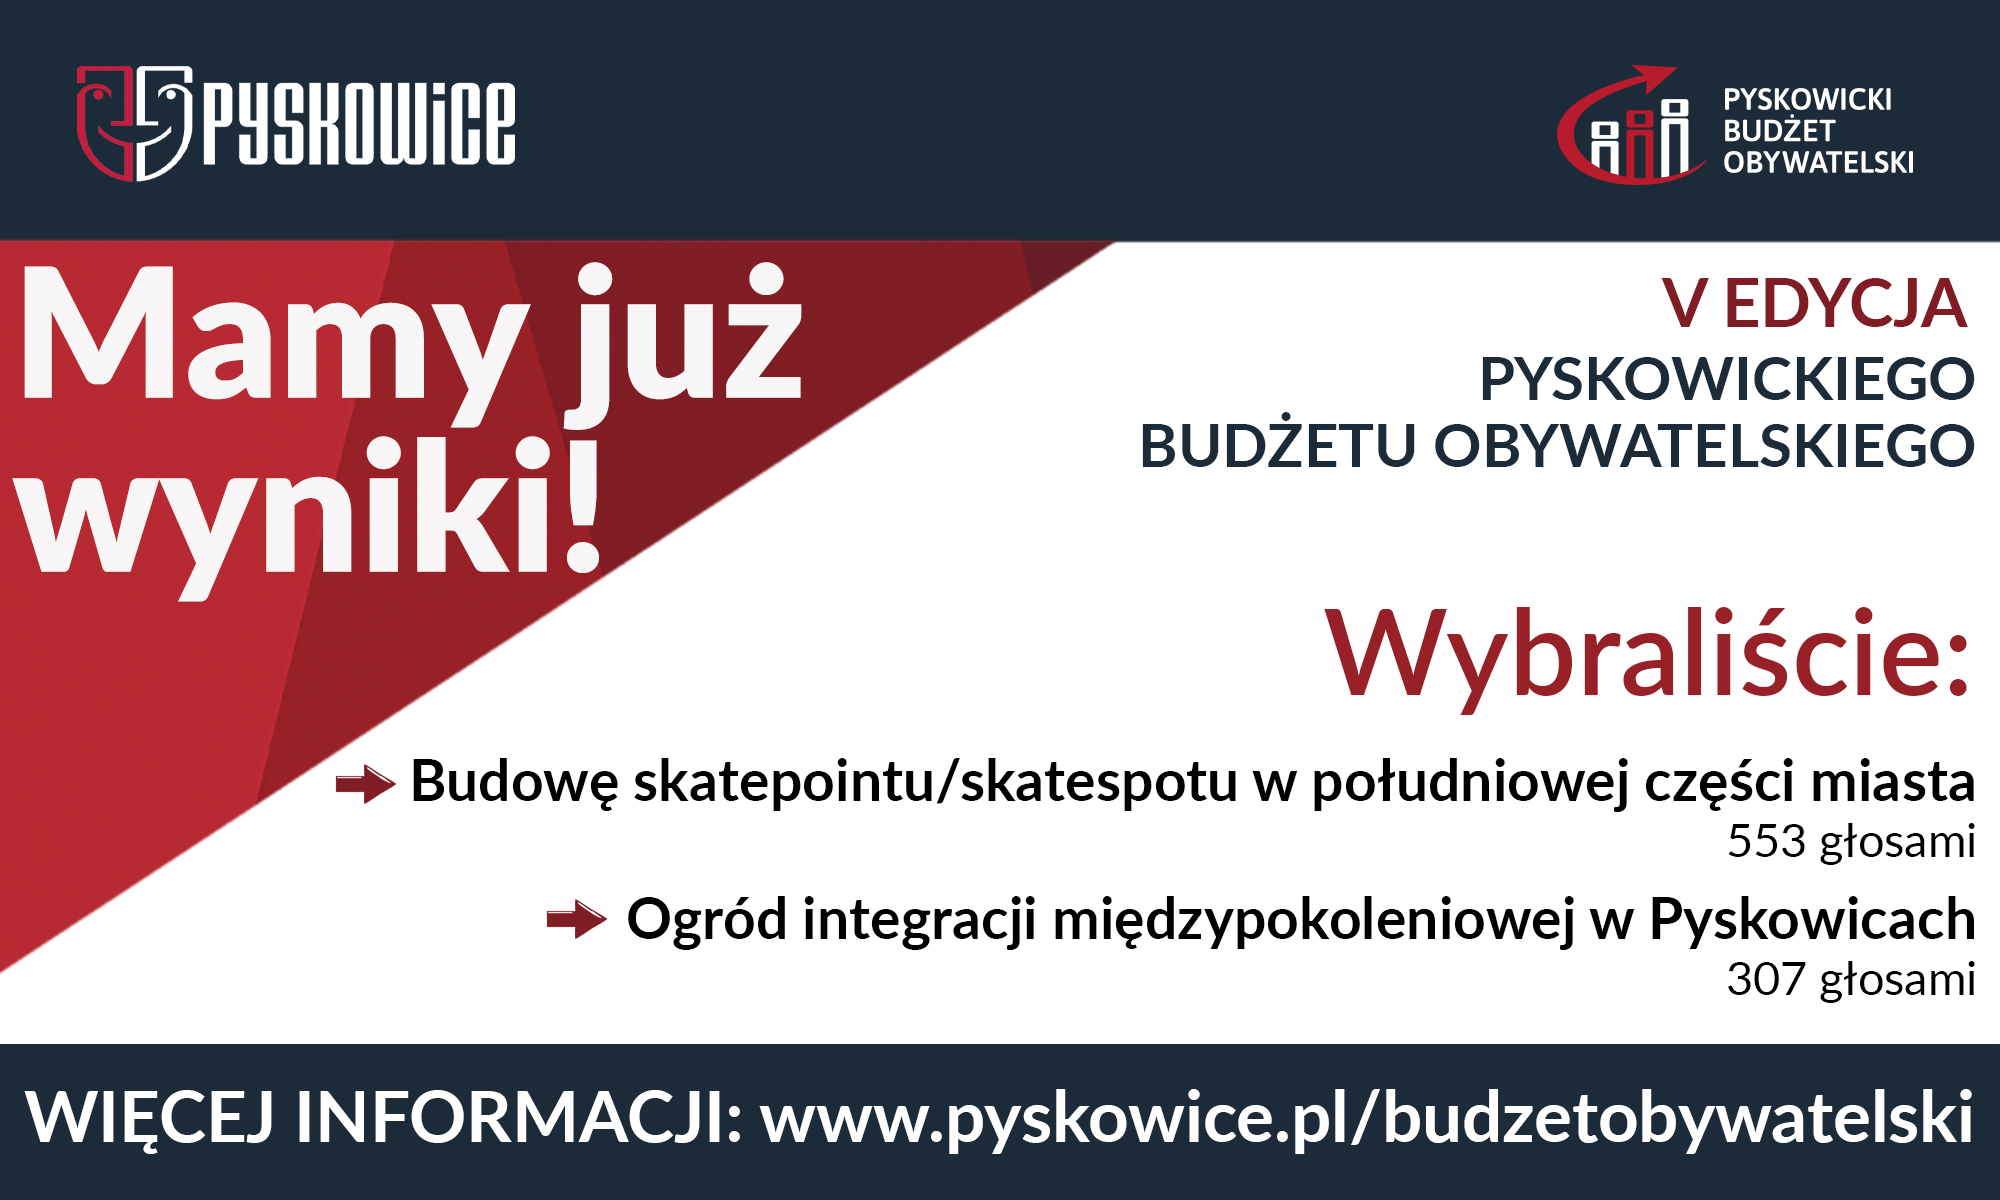 Grafika w kolorystyce biało-granatowo-czerwonej, logo Pyskowic, logo Pyskowickiego Budżetu Obywatelskiego; treść informująca o wynikach 